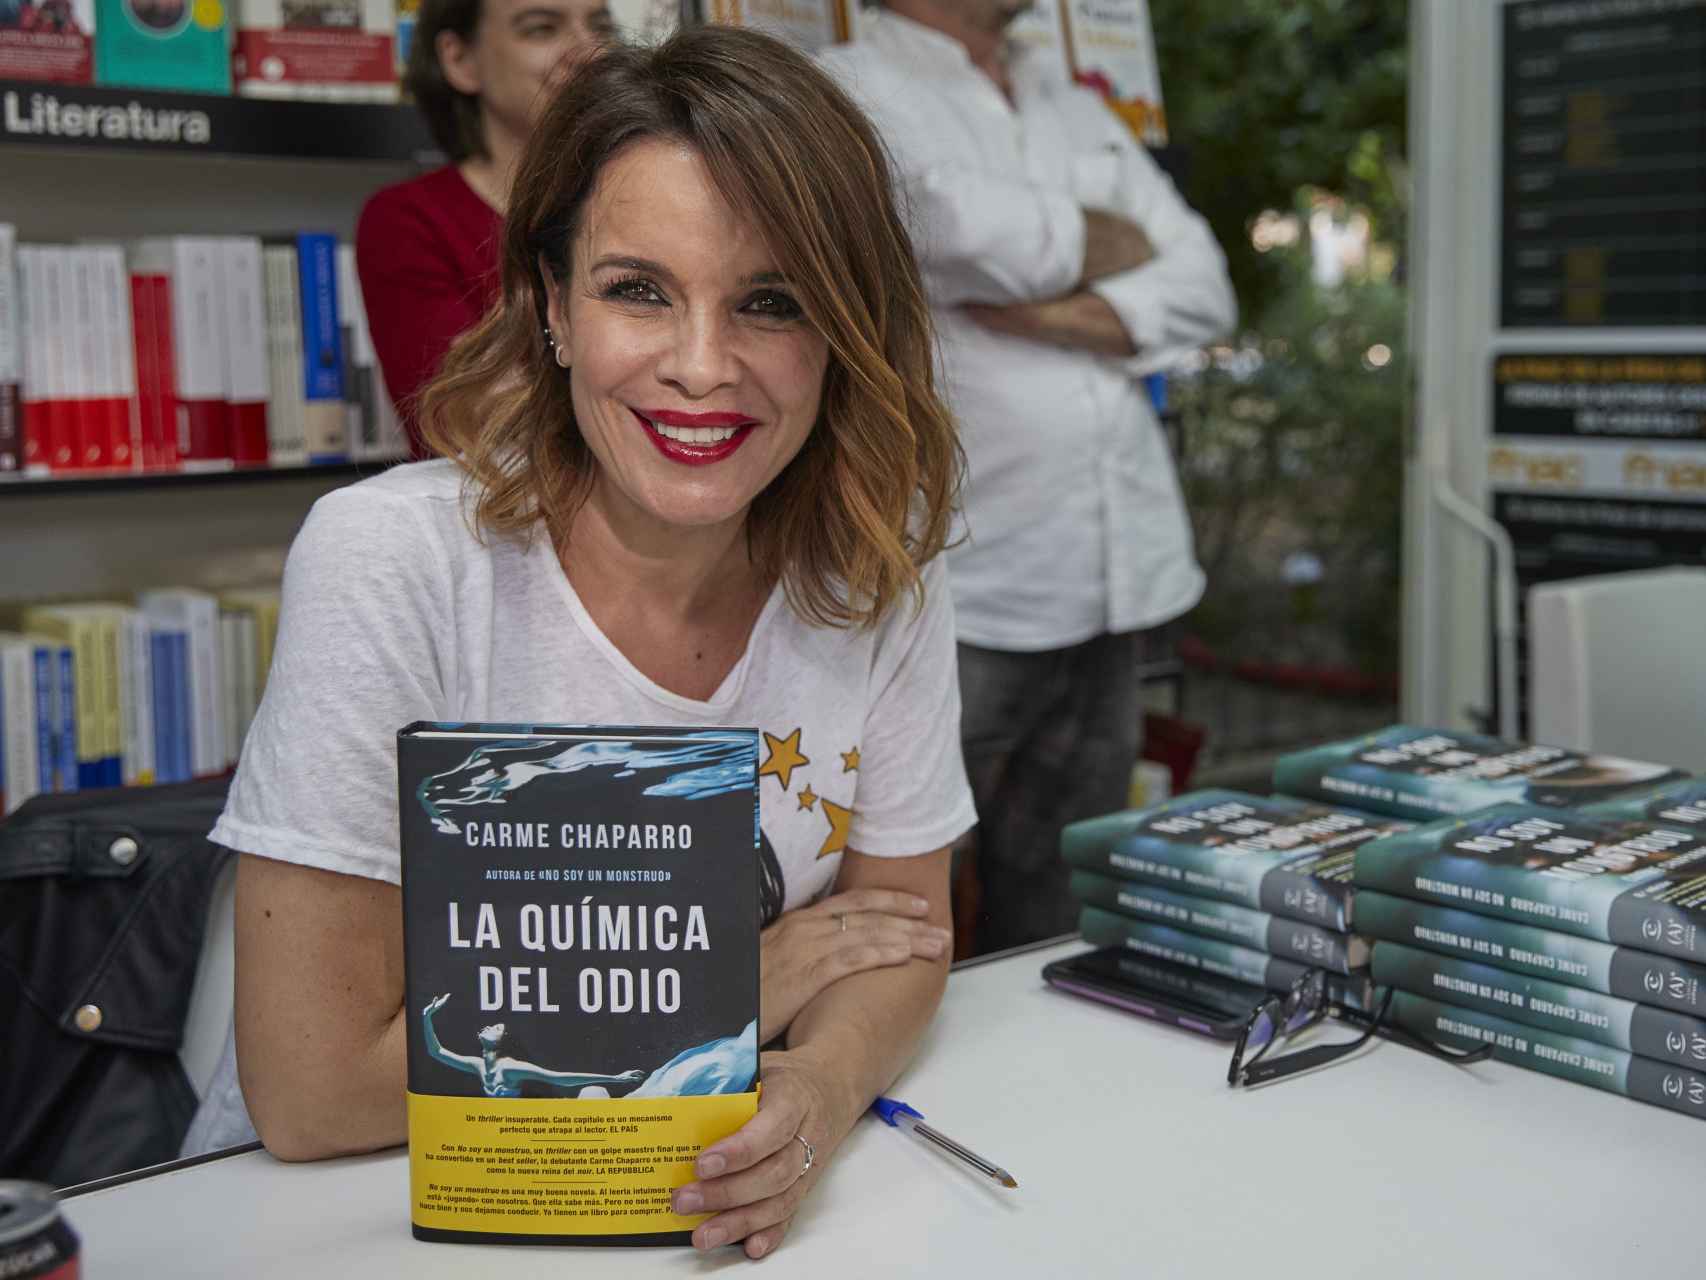 Carme Chaparro en la Feria del Libro de Madrid 2018 con su libro 'La química del odio'.